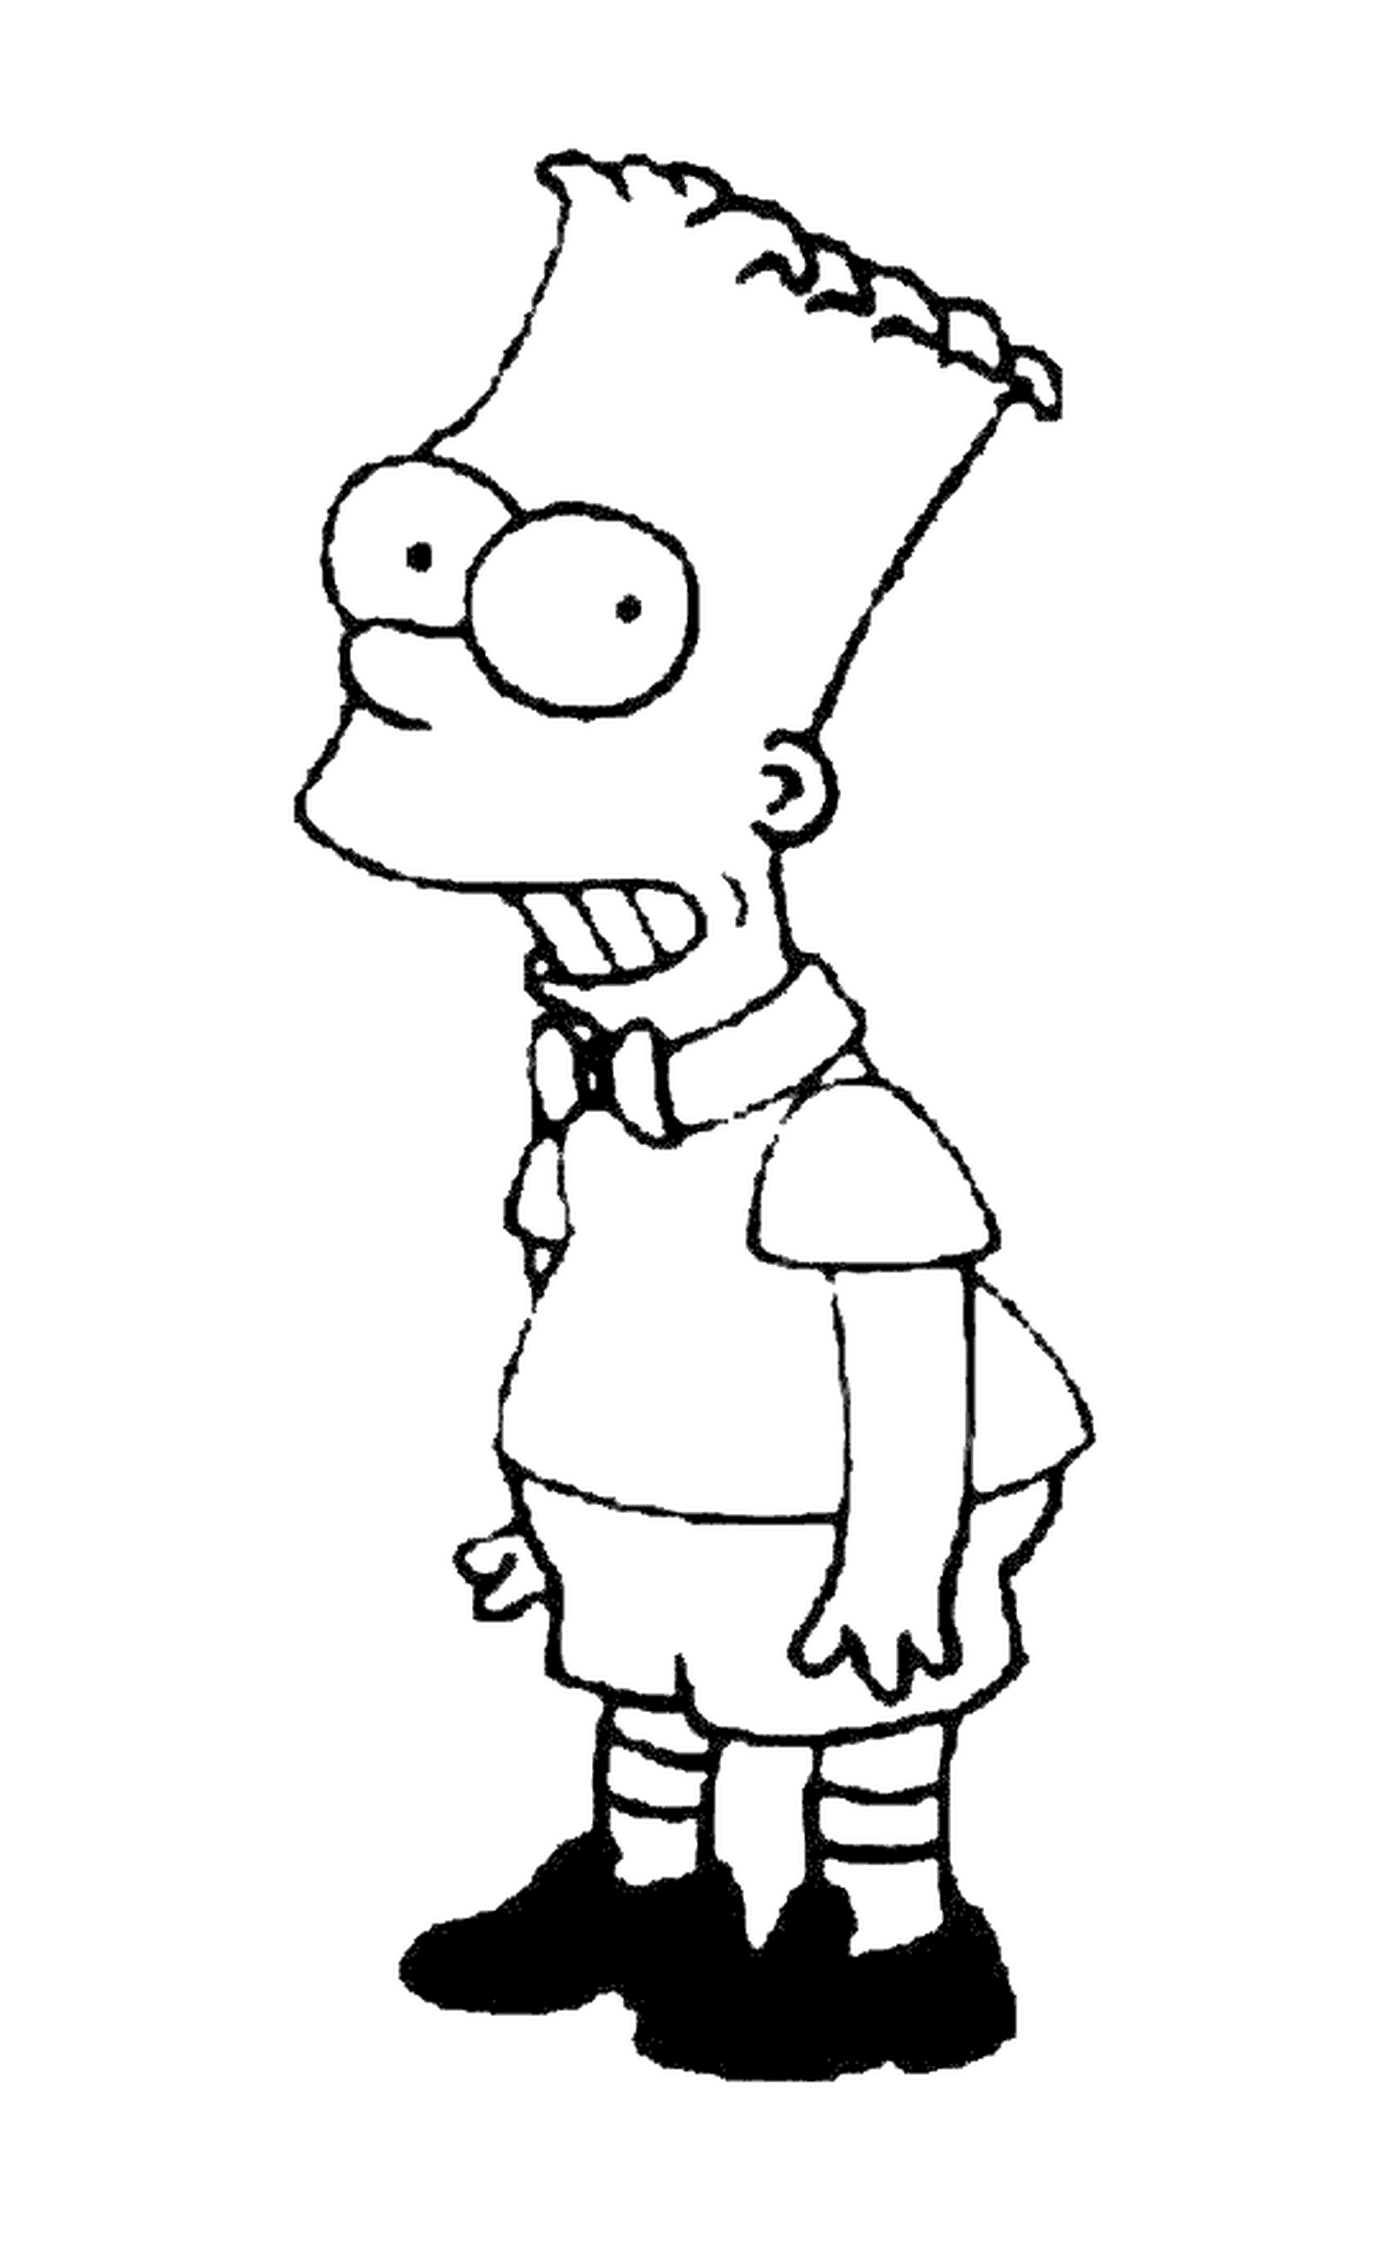  Bart como modelo de niño, personaje de los Simpson 